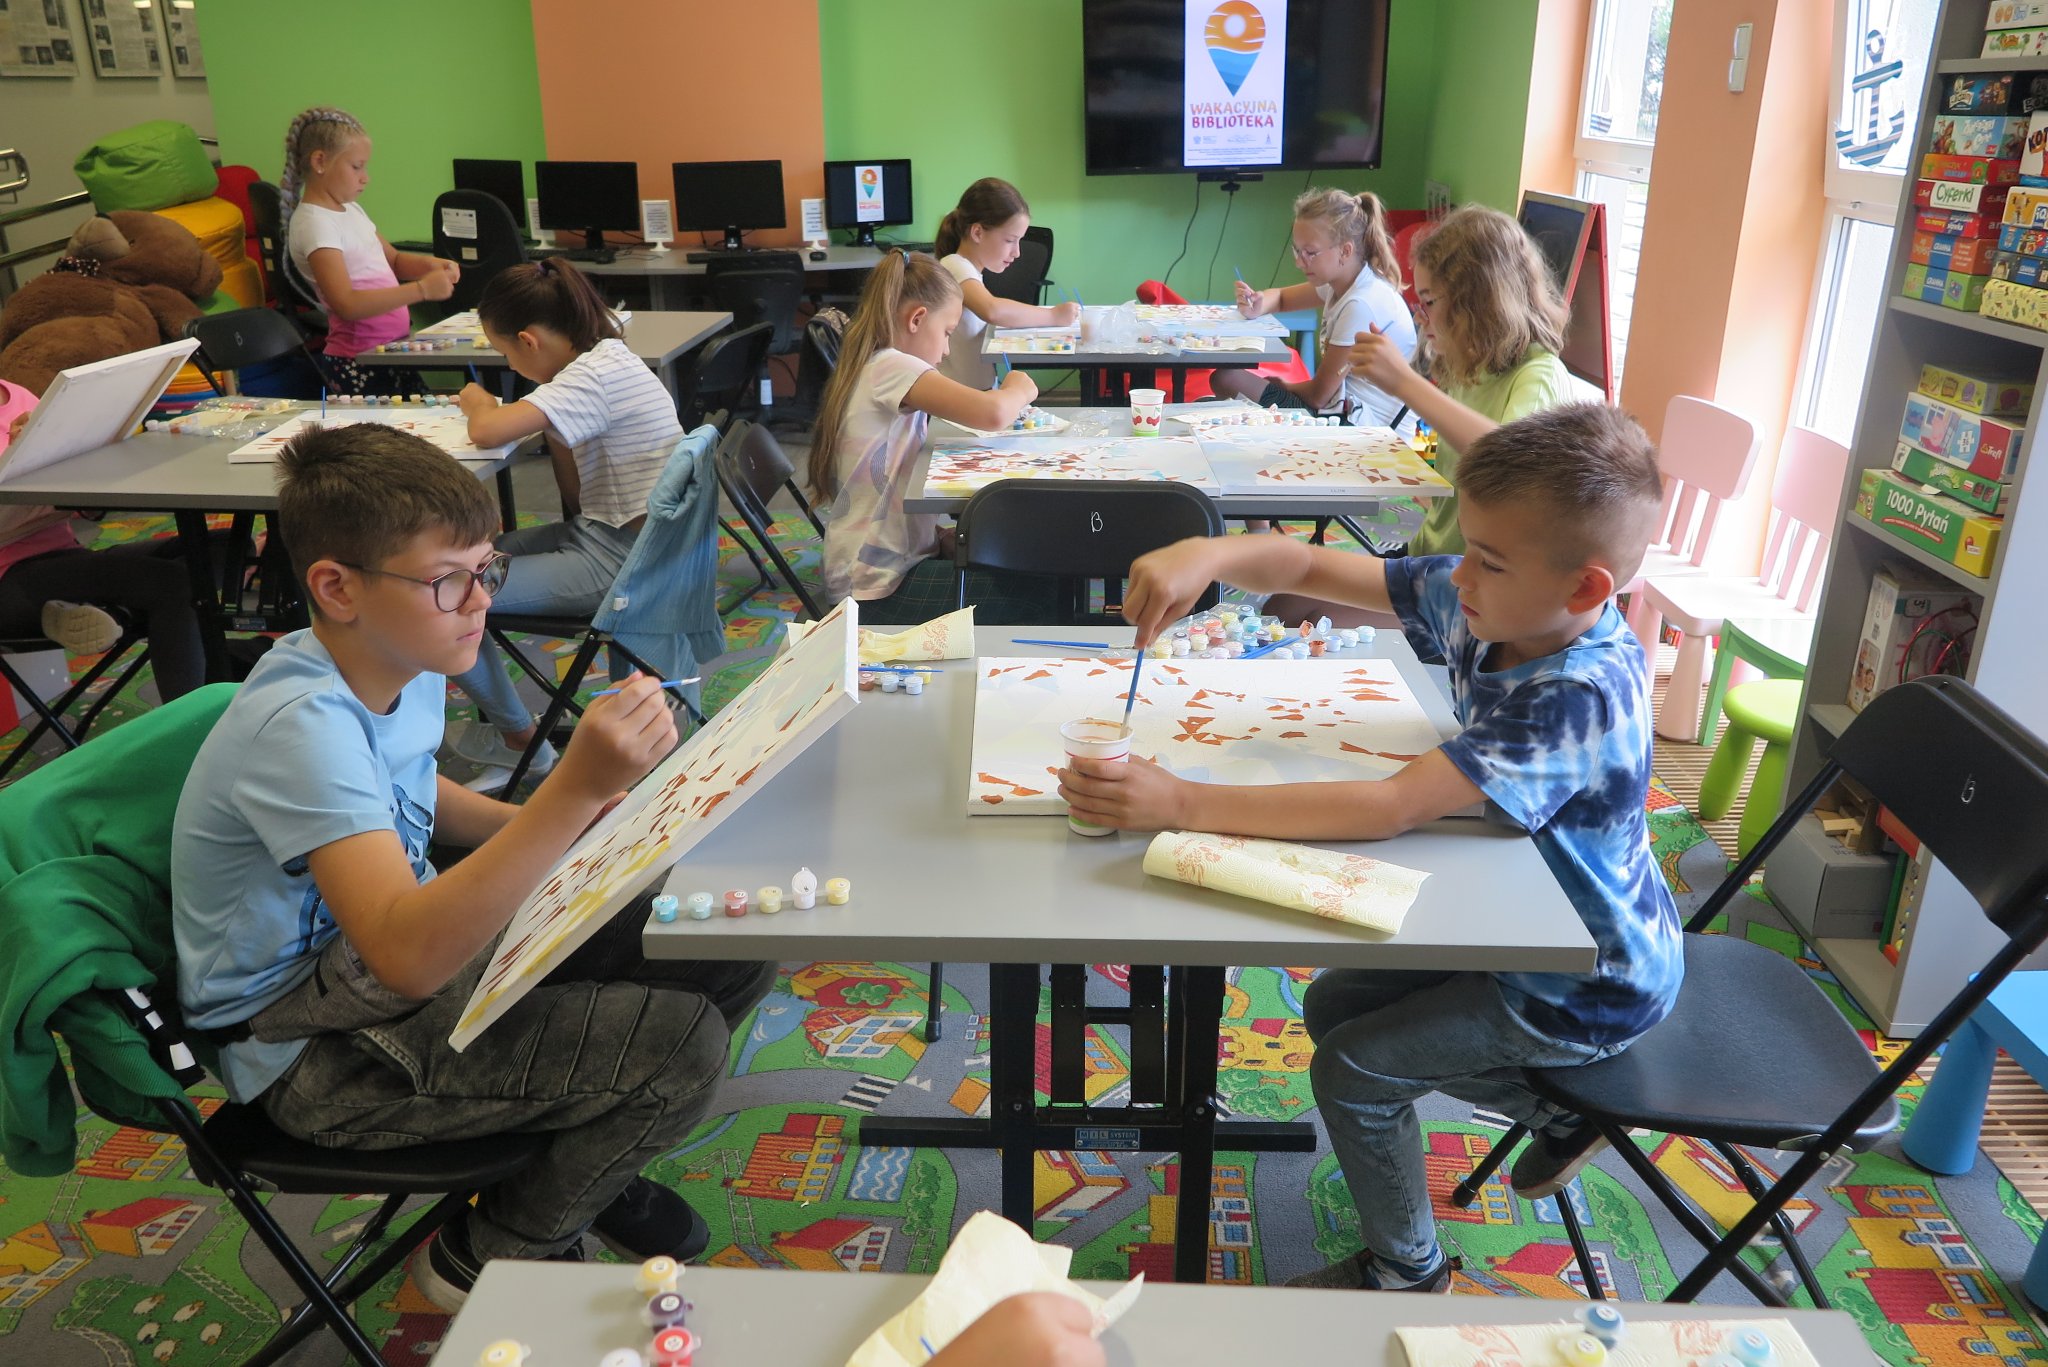 dzieci siedzą przy stolikach w oddziale dla dzieci, na stolikach leżą zestawy do malowania obrazów, dzieci malują obrazy